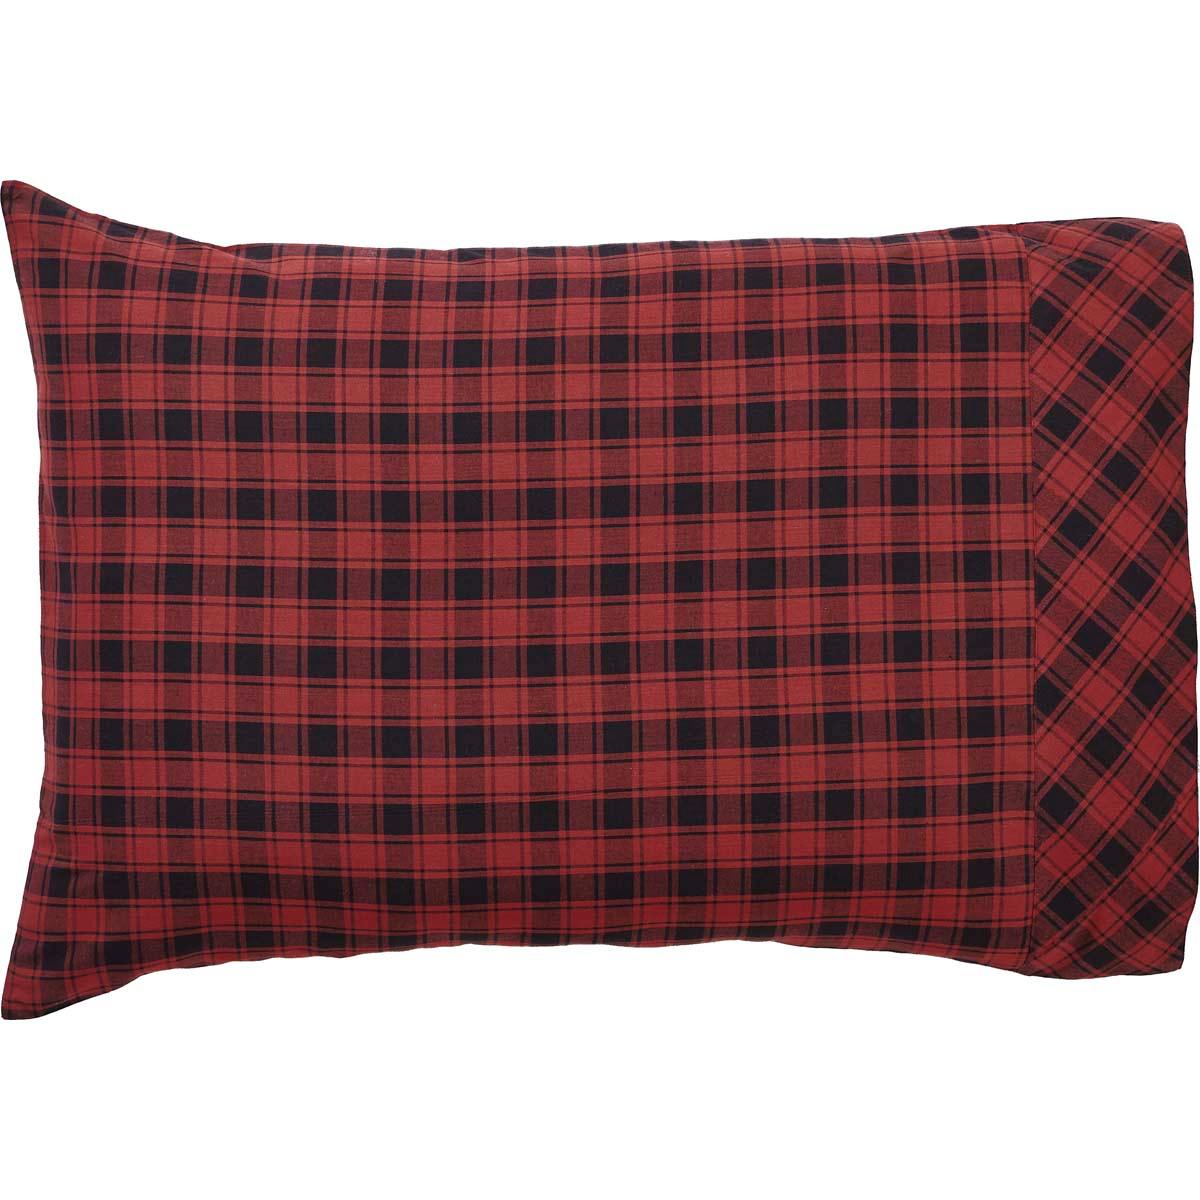 Cumberland Standard Pillow Case Set of 2 21x30 VHC Brands - The Fox Decor